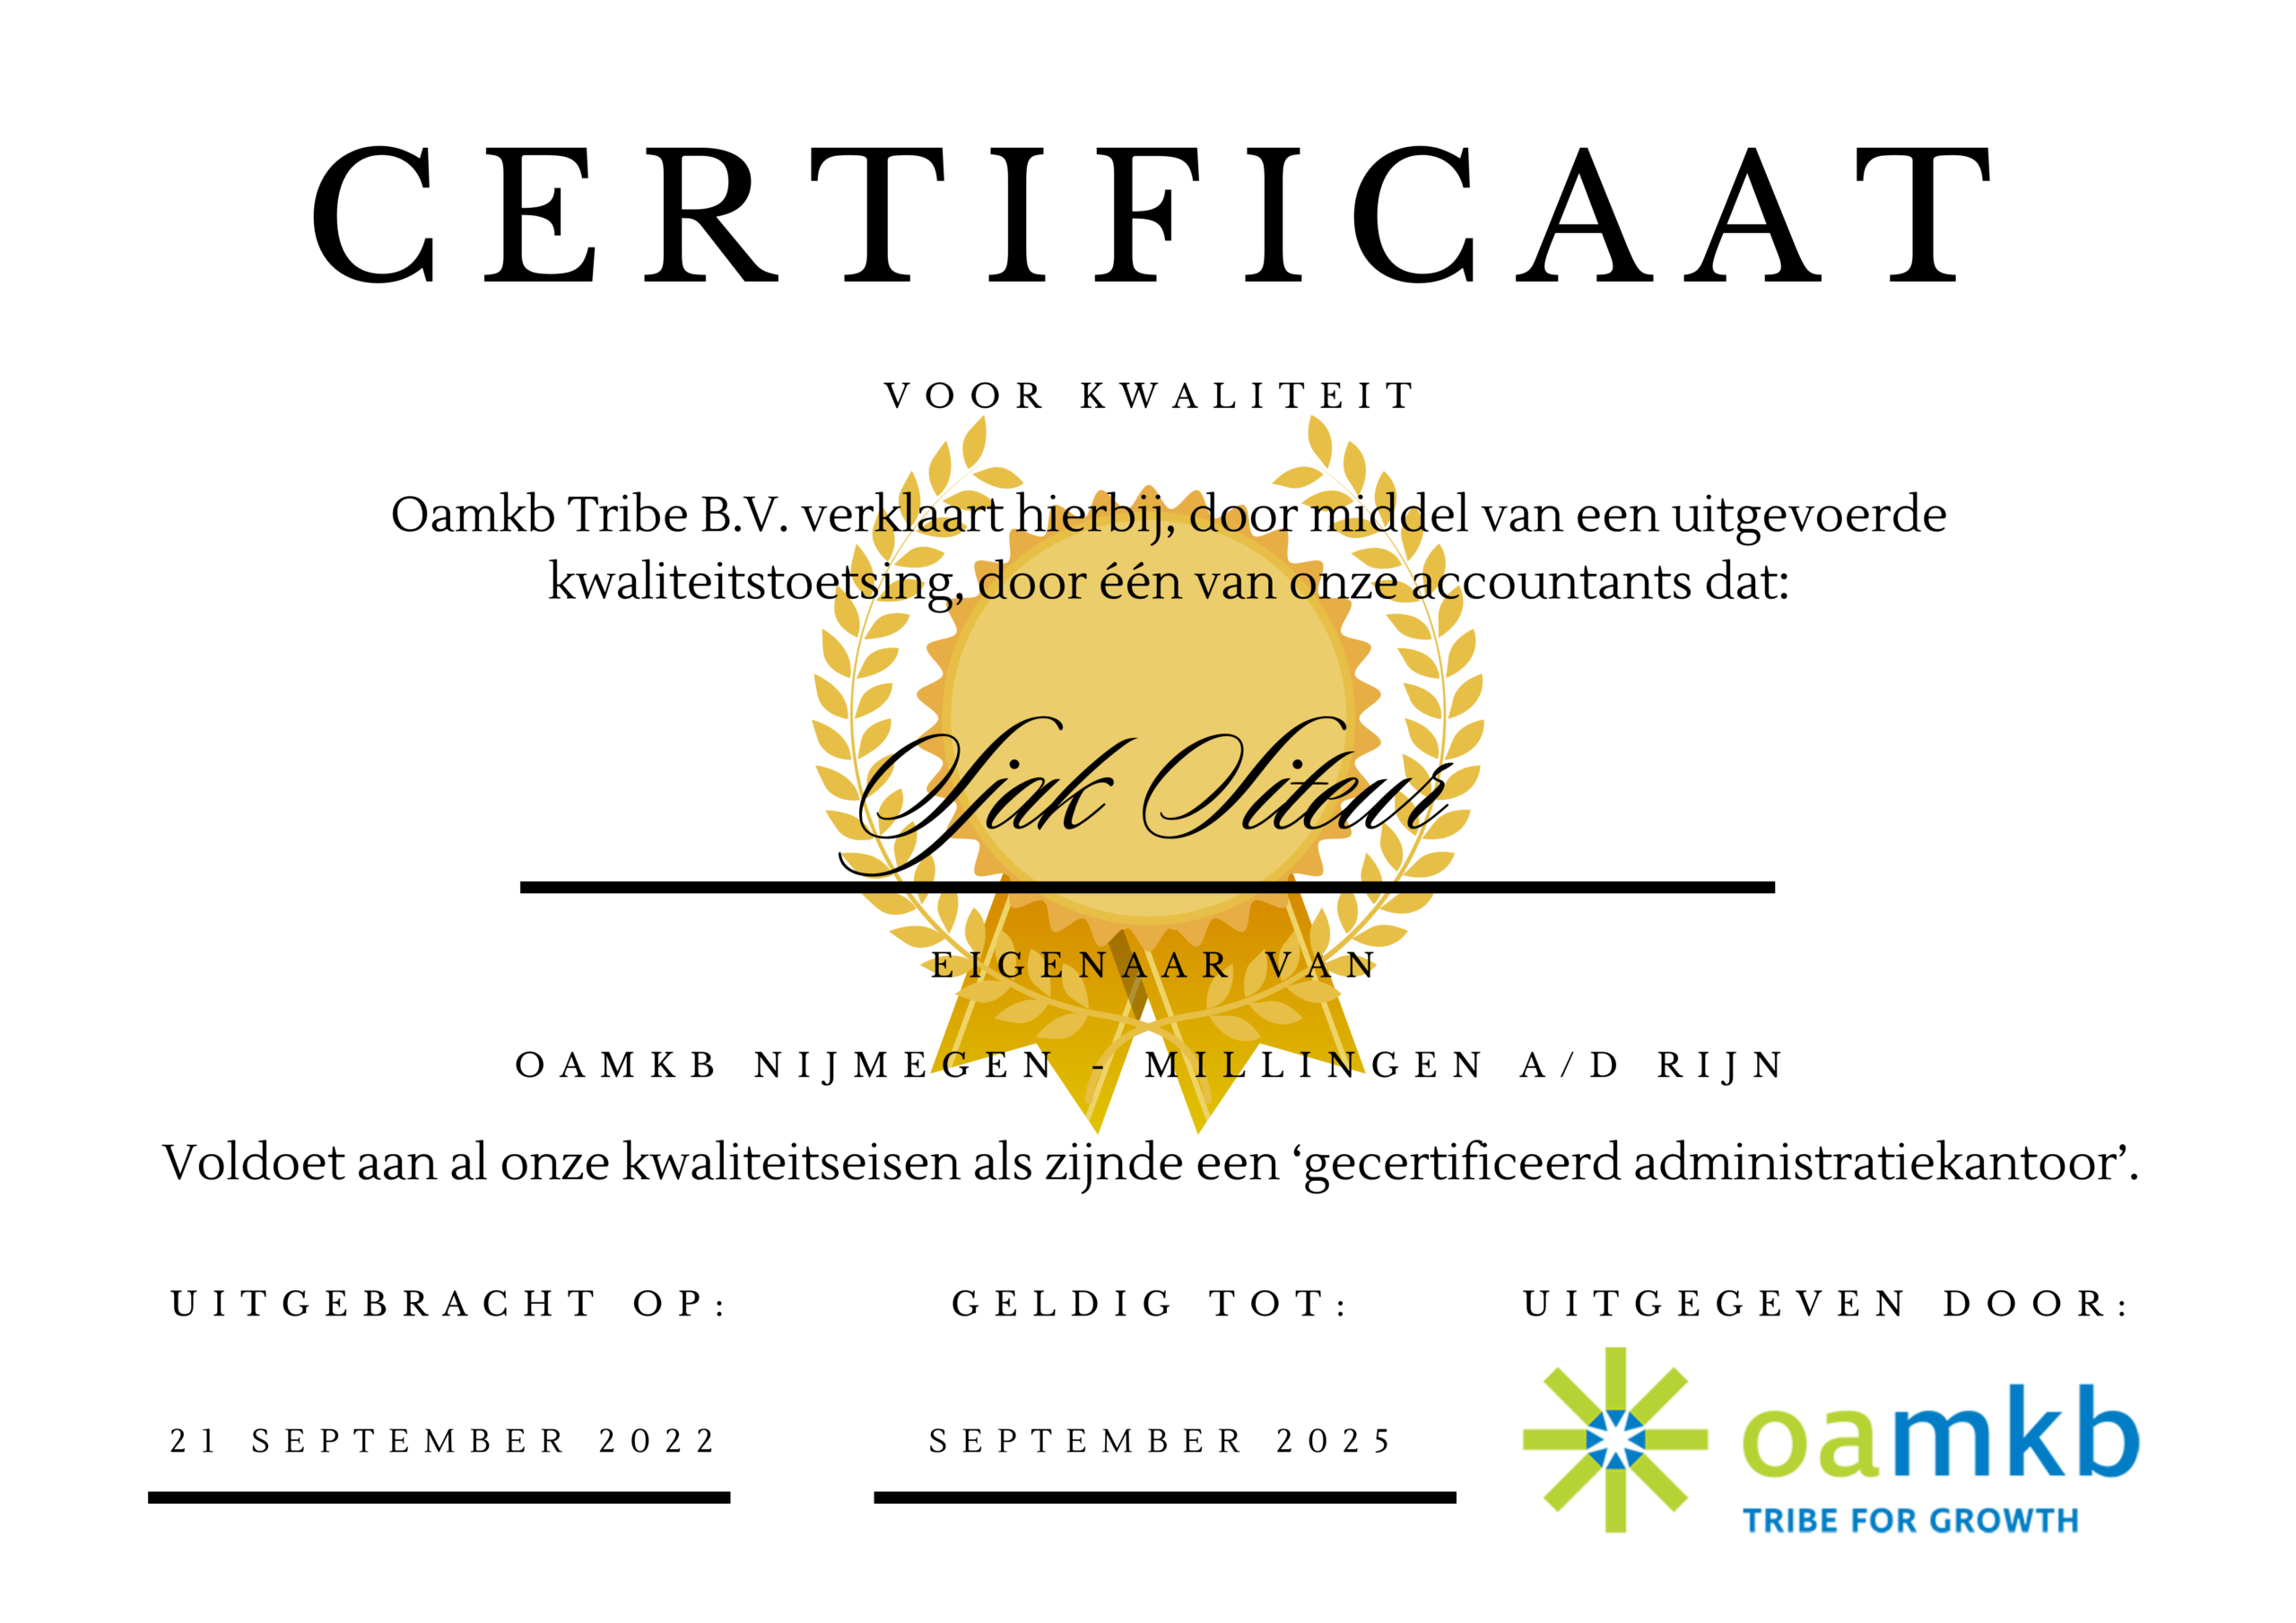 Certificaat voor kwaliteit - Sjak Siteur